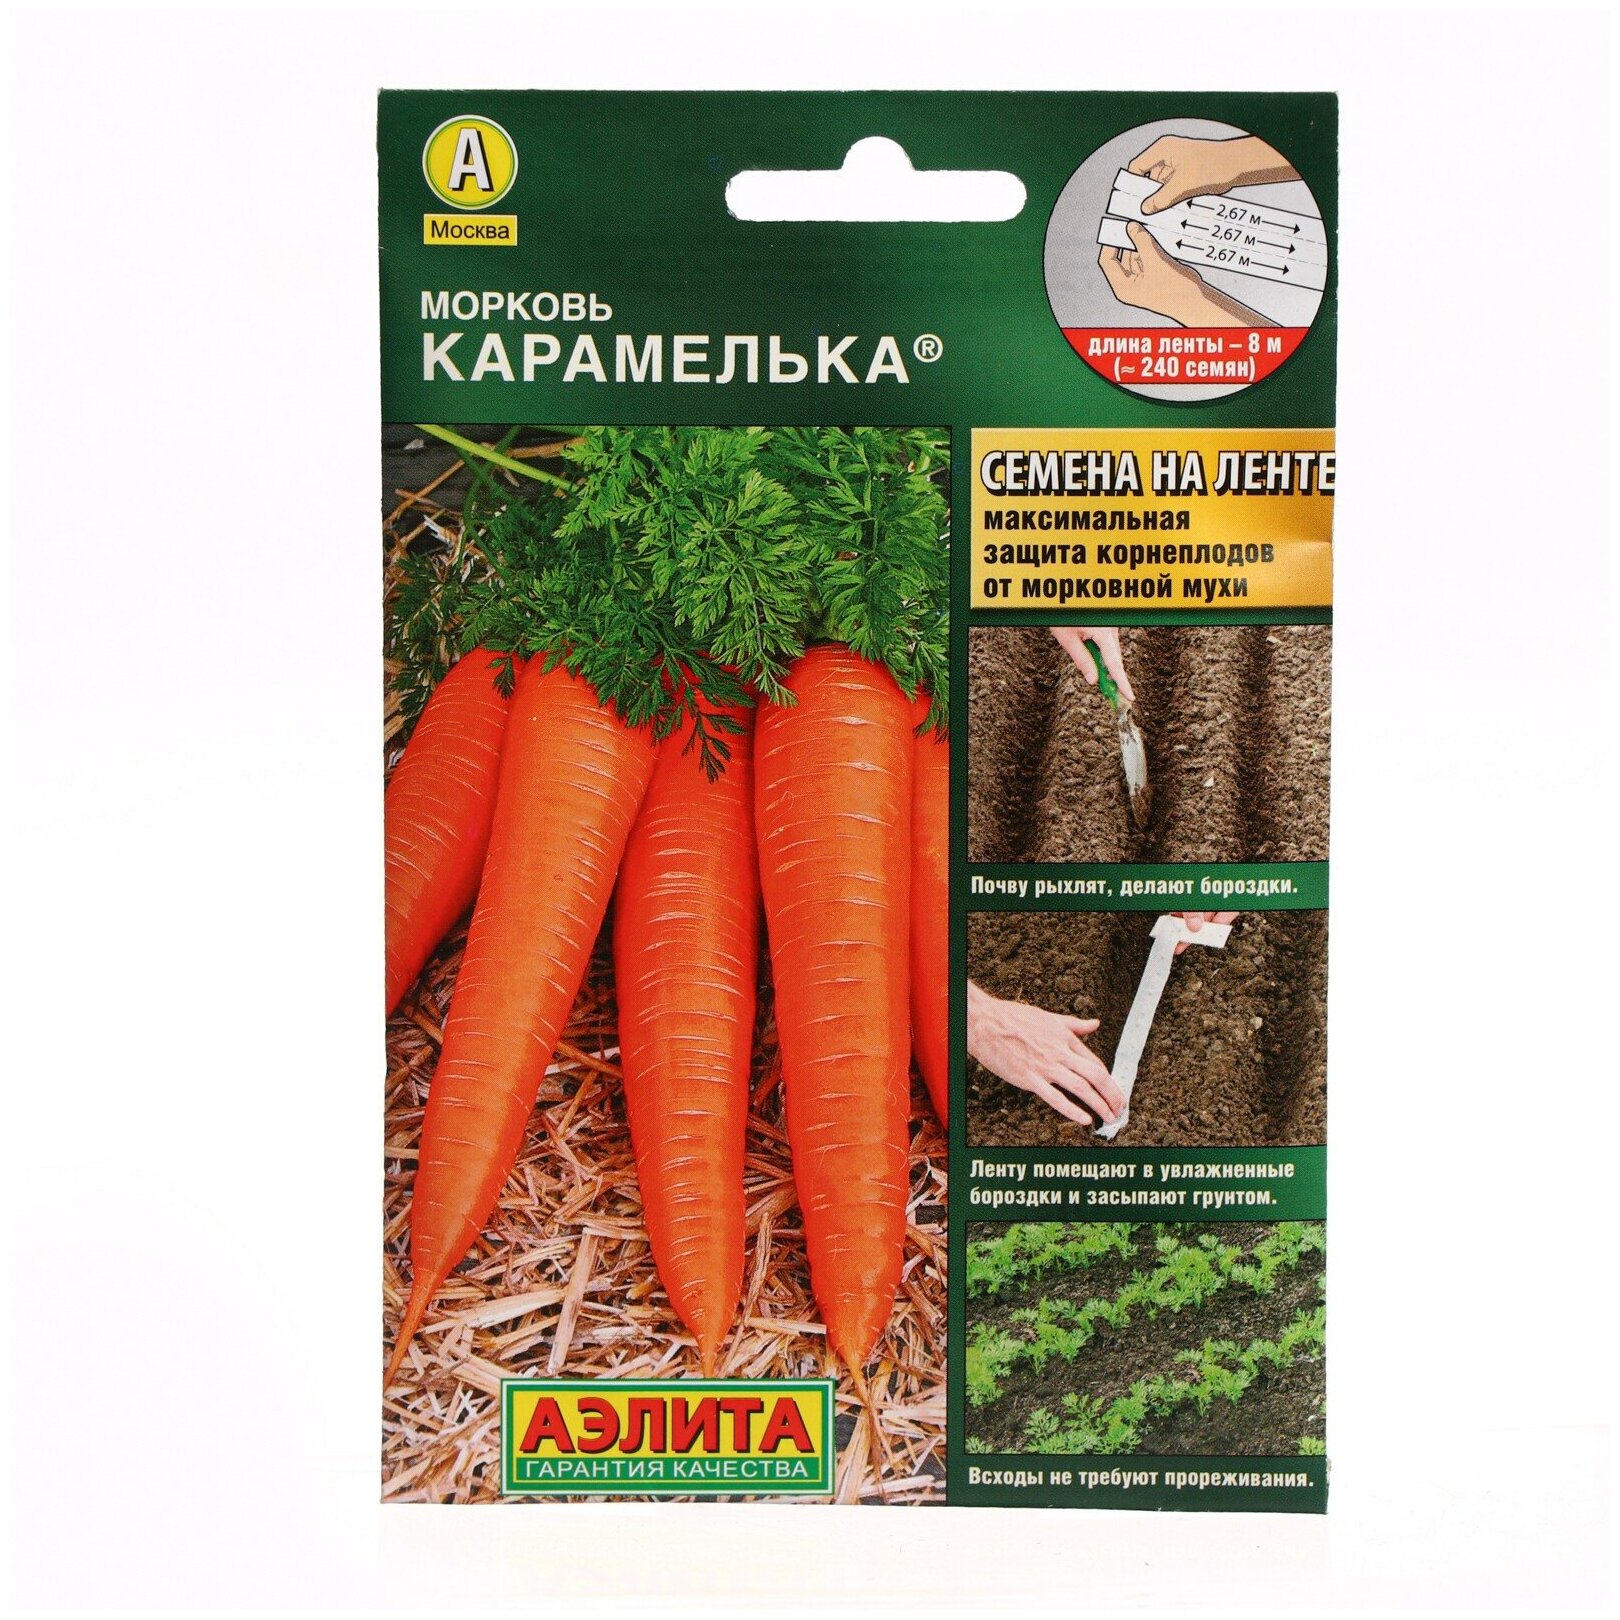 Семена Агрофирма АЭЛИТА Морковь Карамелька 8 м (на ленте)